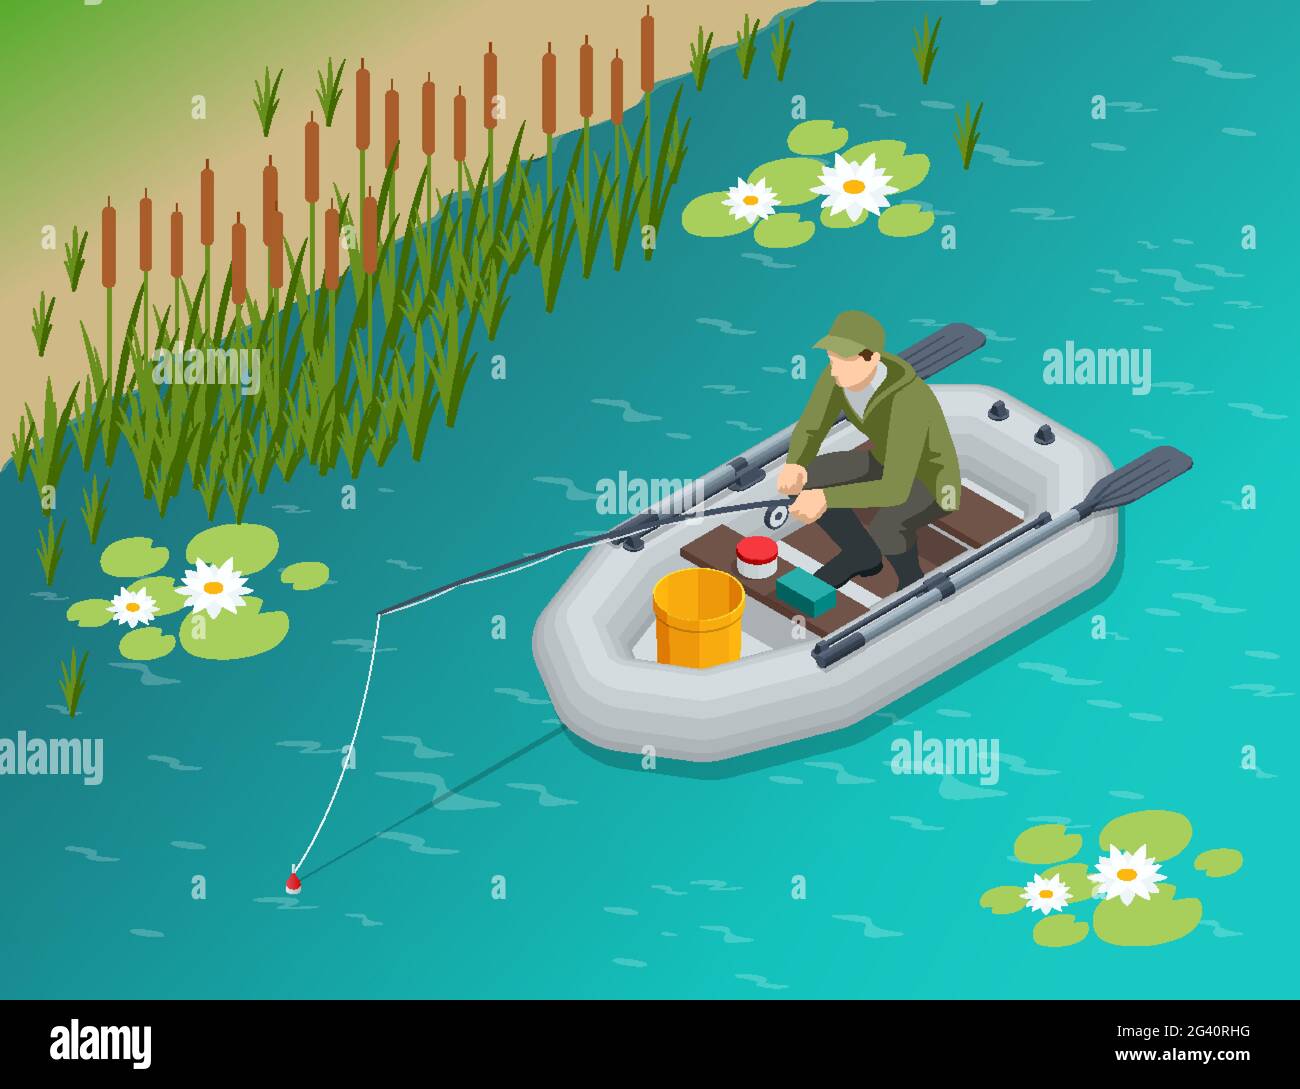 Pêcheur isométrique avec une canne à pêche assis dans un bateau gonflable et attrape des poissons sur un lac ou une rivière. Pêcheur assis avec canne à pêche et observation Illustration de Vecteur